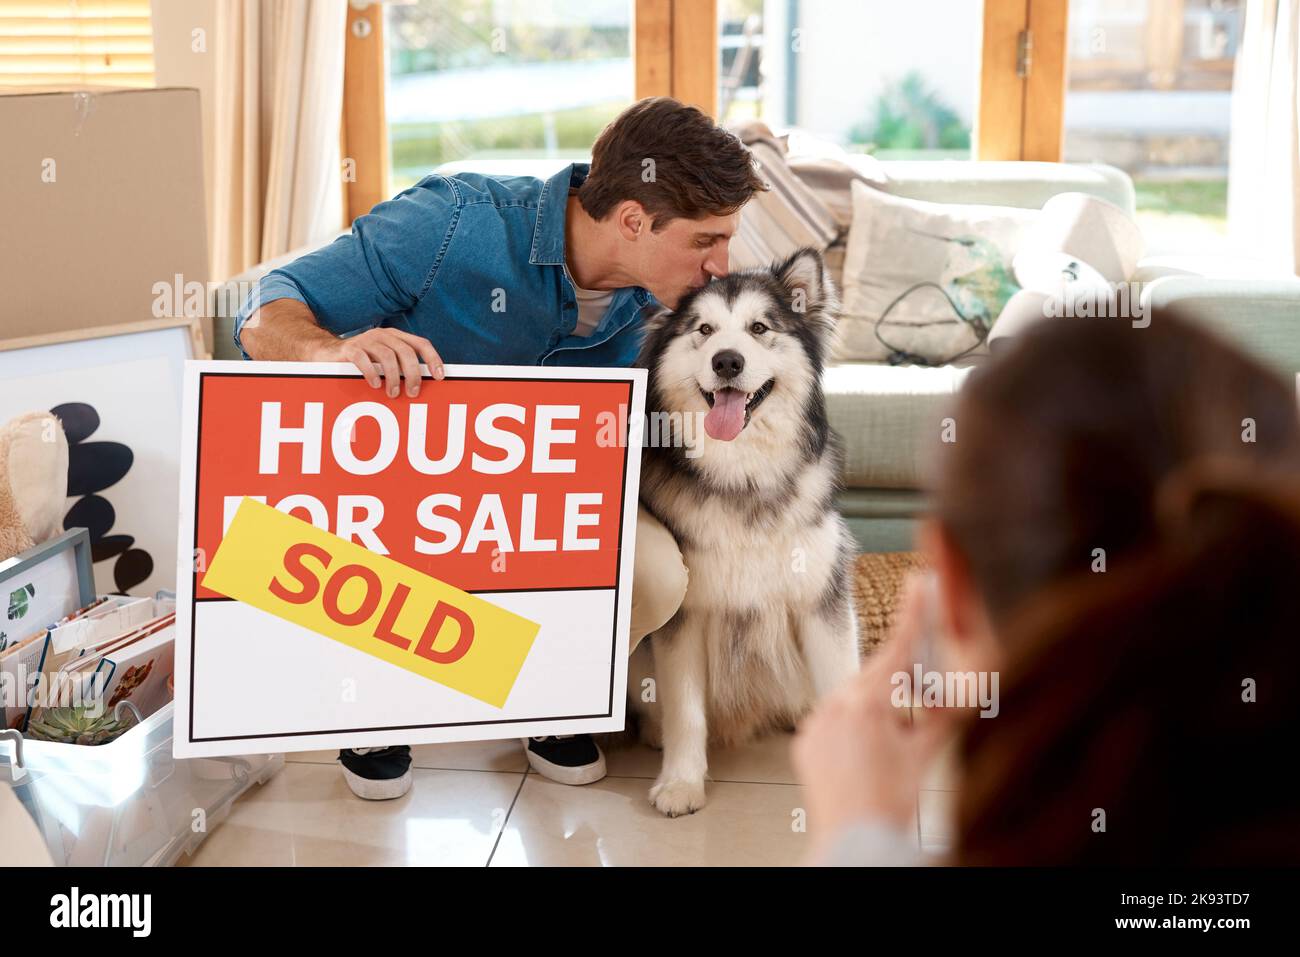 Wir waren glücklich mit unserem neuen Zuhause. Ein glückliches junges Paar und ihr Hund machten Fotos mit einem verkauften Schild in ihrem neuen Zuhause. Stockfoto